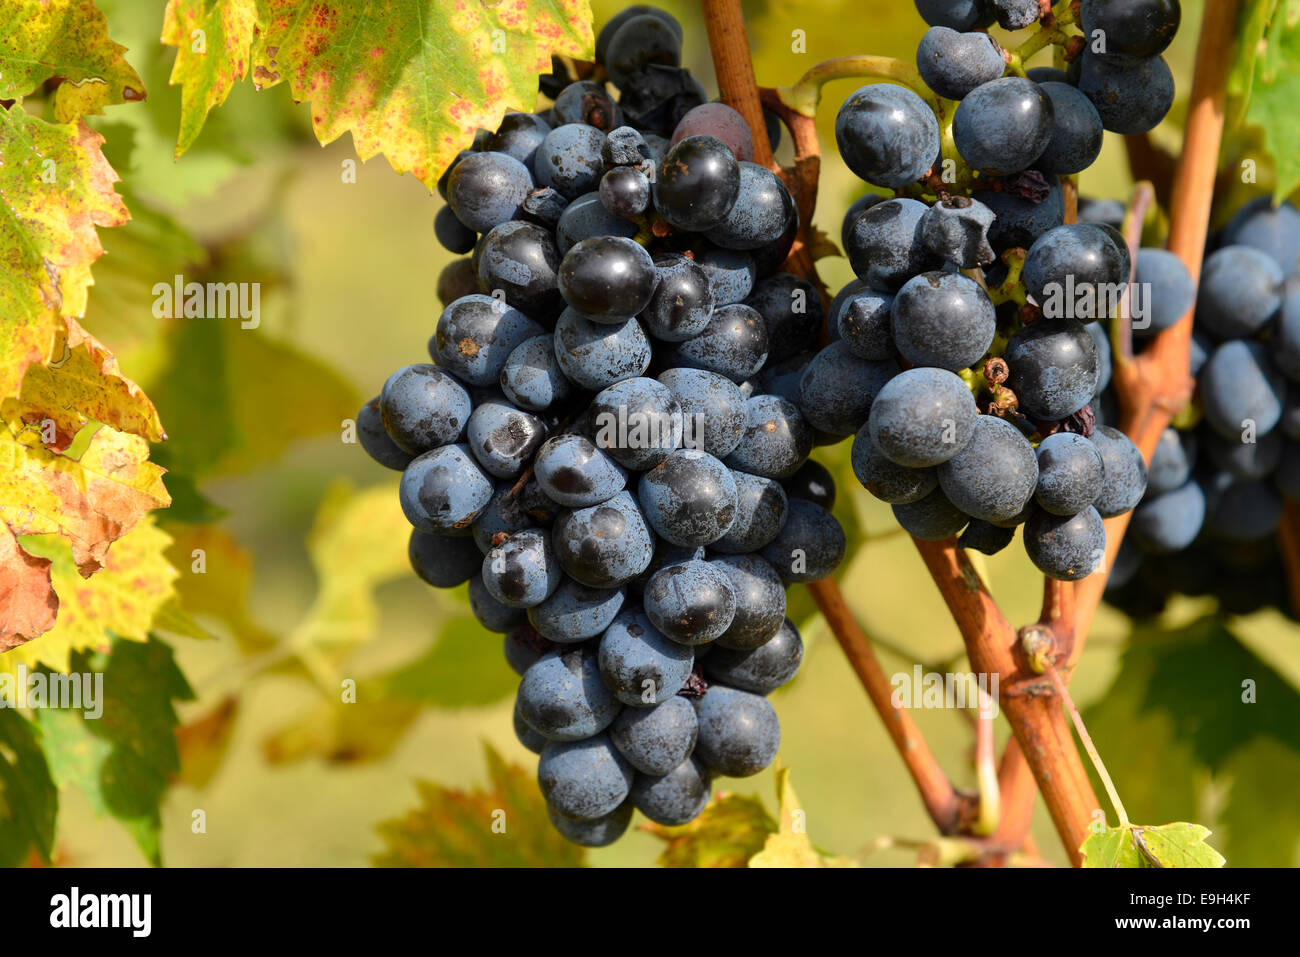 Le uve, Val d'Orcia, bei Montepulciano in provincia di Siena, Toscana, Italia Foto Stock